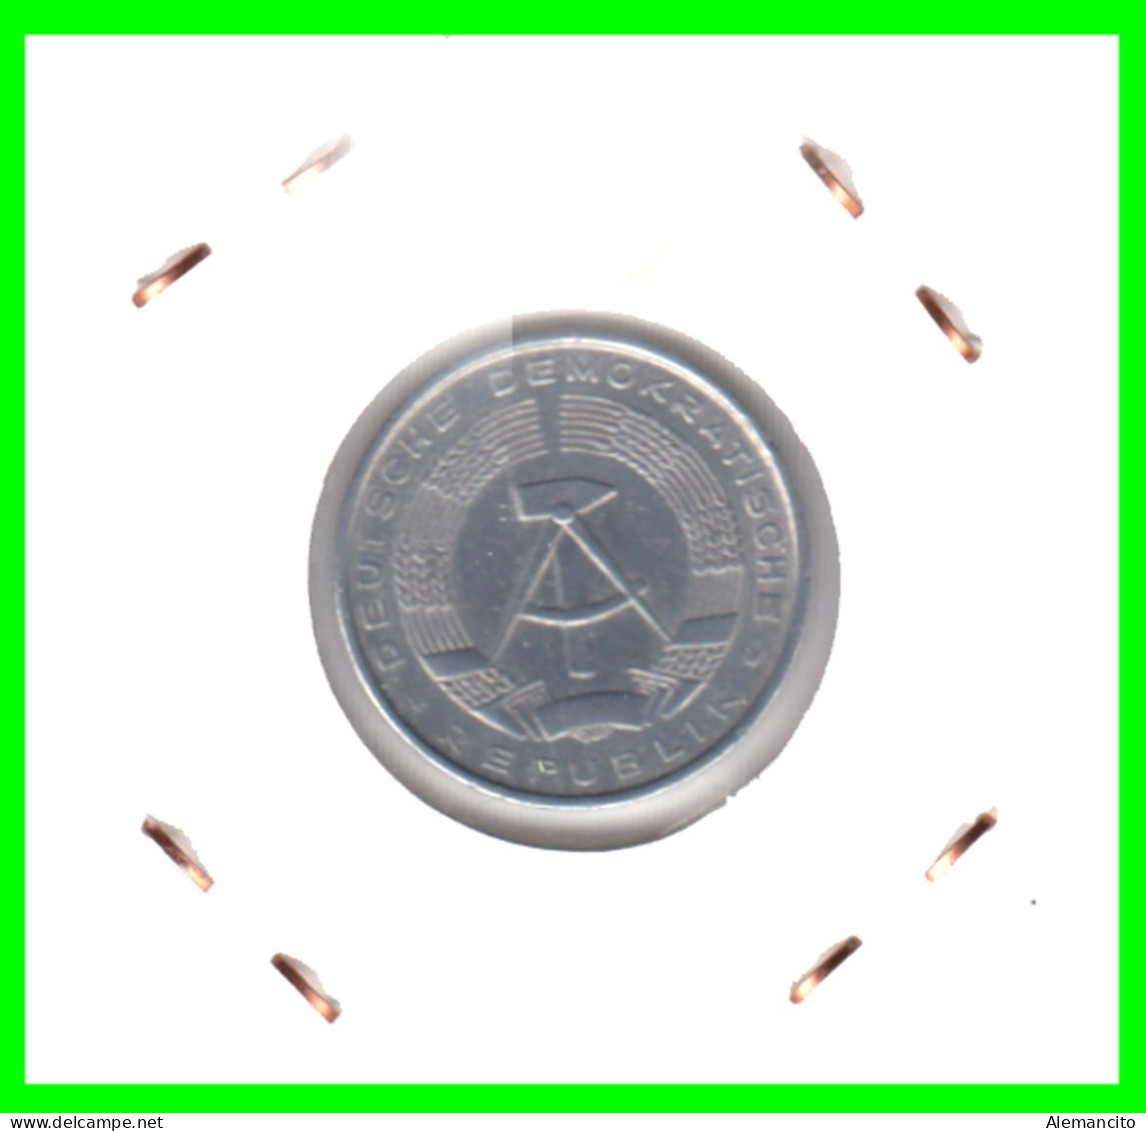 REPUBLICA DEMOCRATICA DE ALEMANIA ( DDR )  MONEDA DE 10 PFENNING AÑO - 1963 - CECA - A - MONEDA DE ALUMINIO CIRCULADA - 10 Pfennig